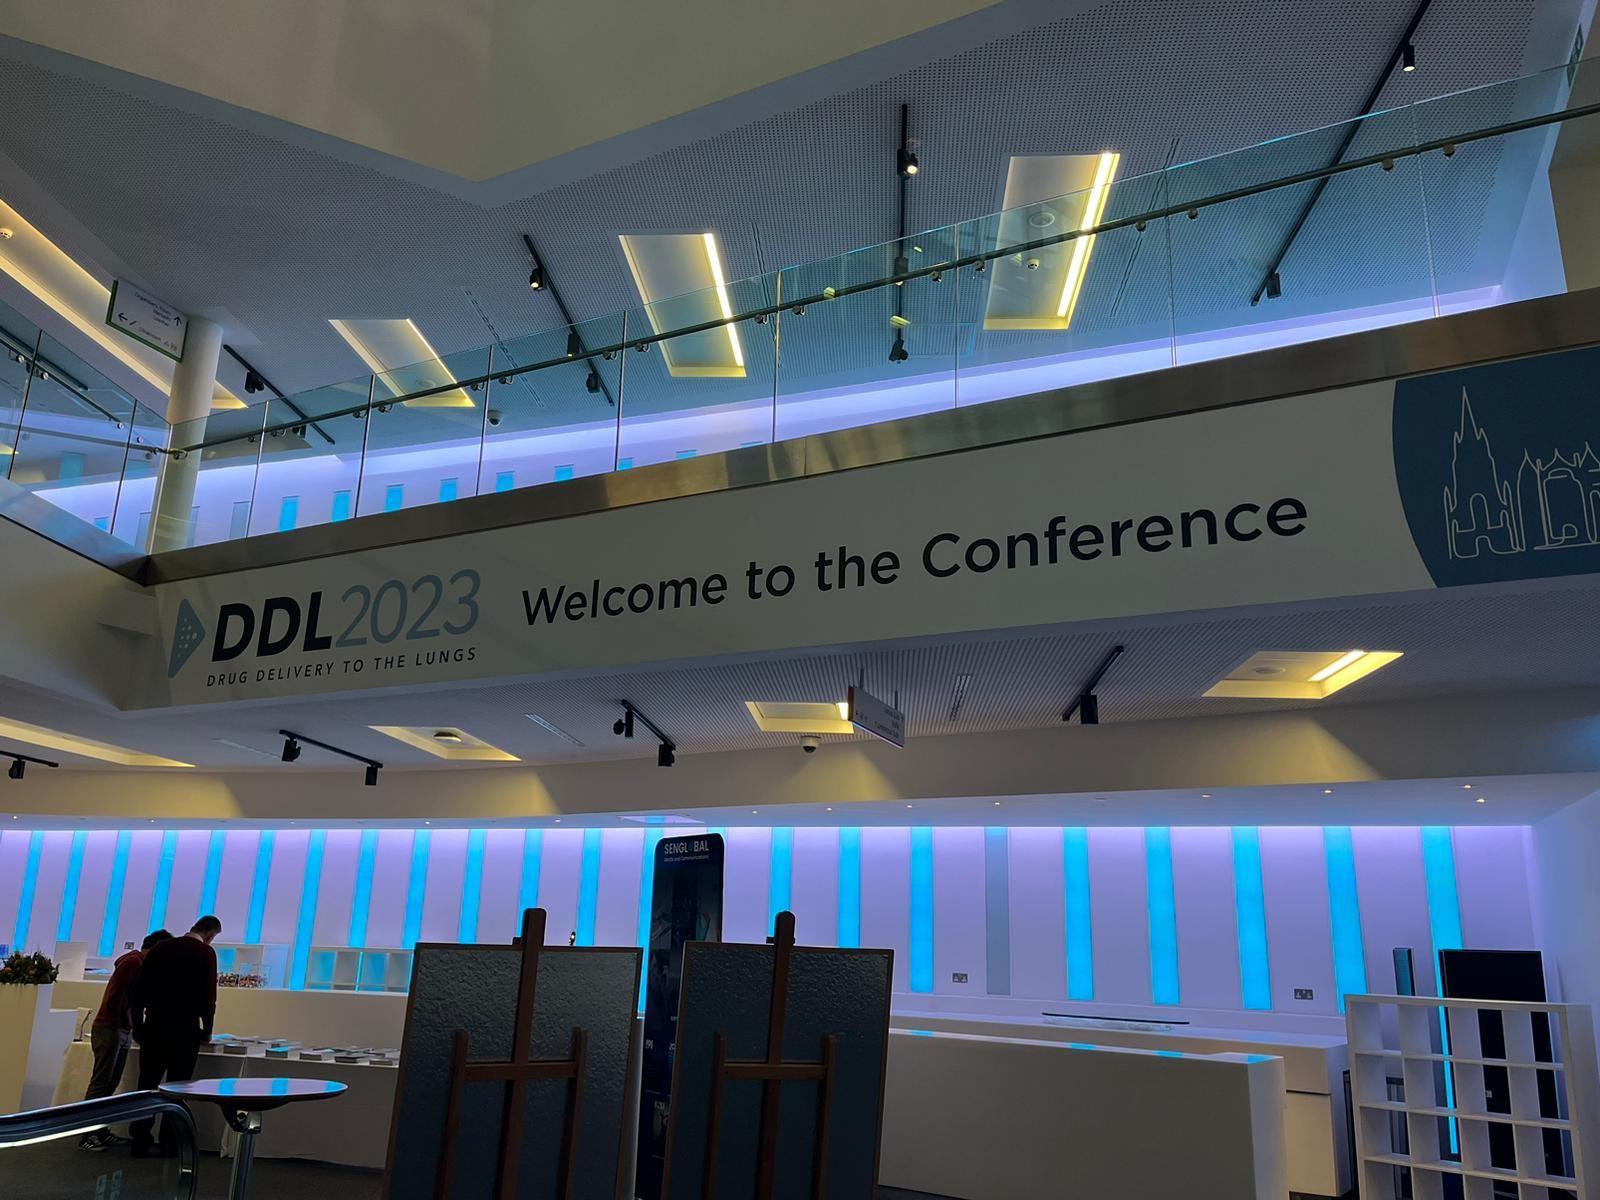 DDL-Conference-2023